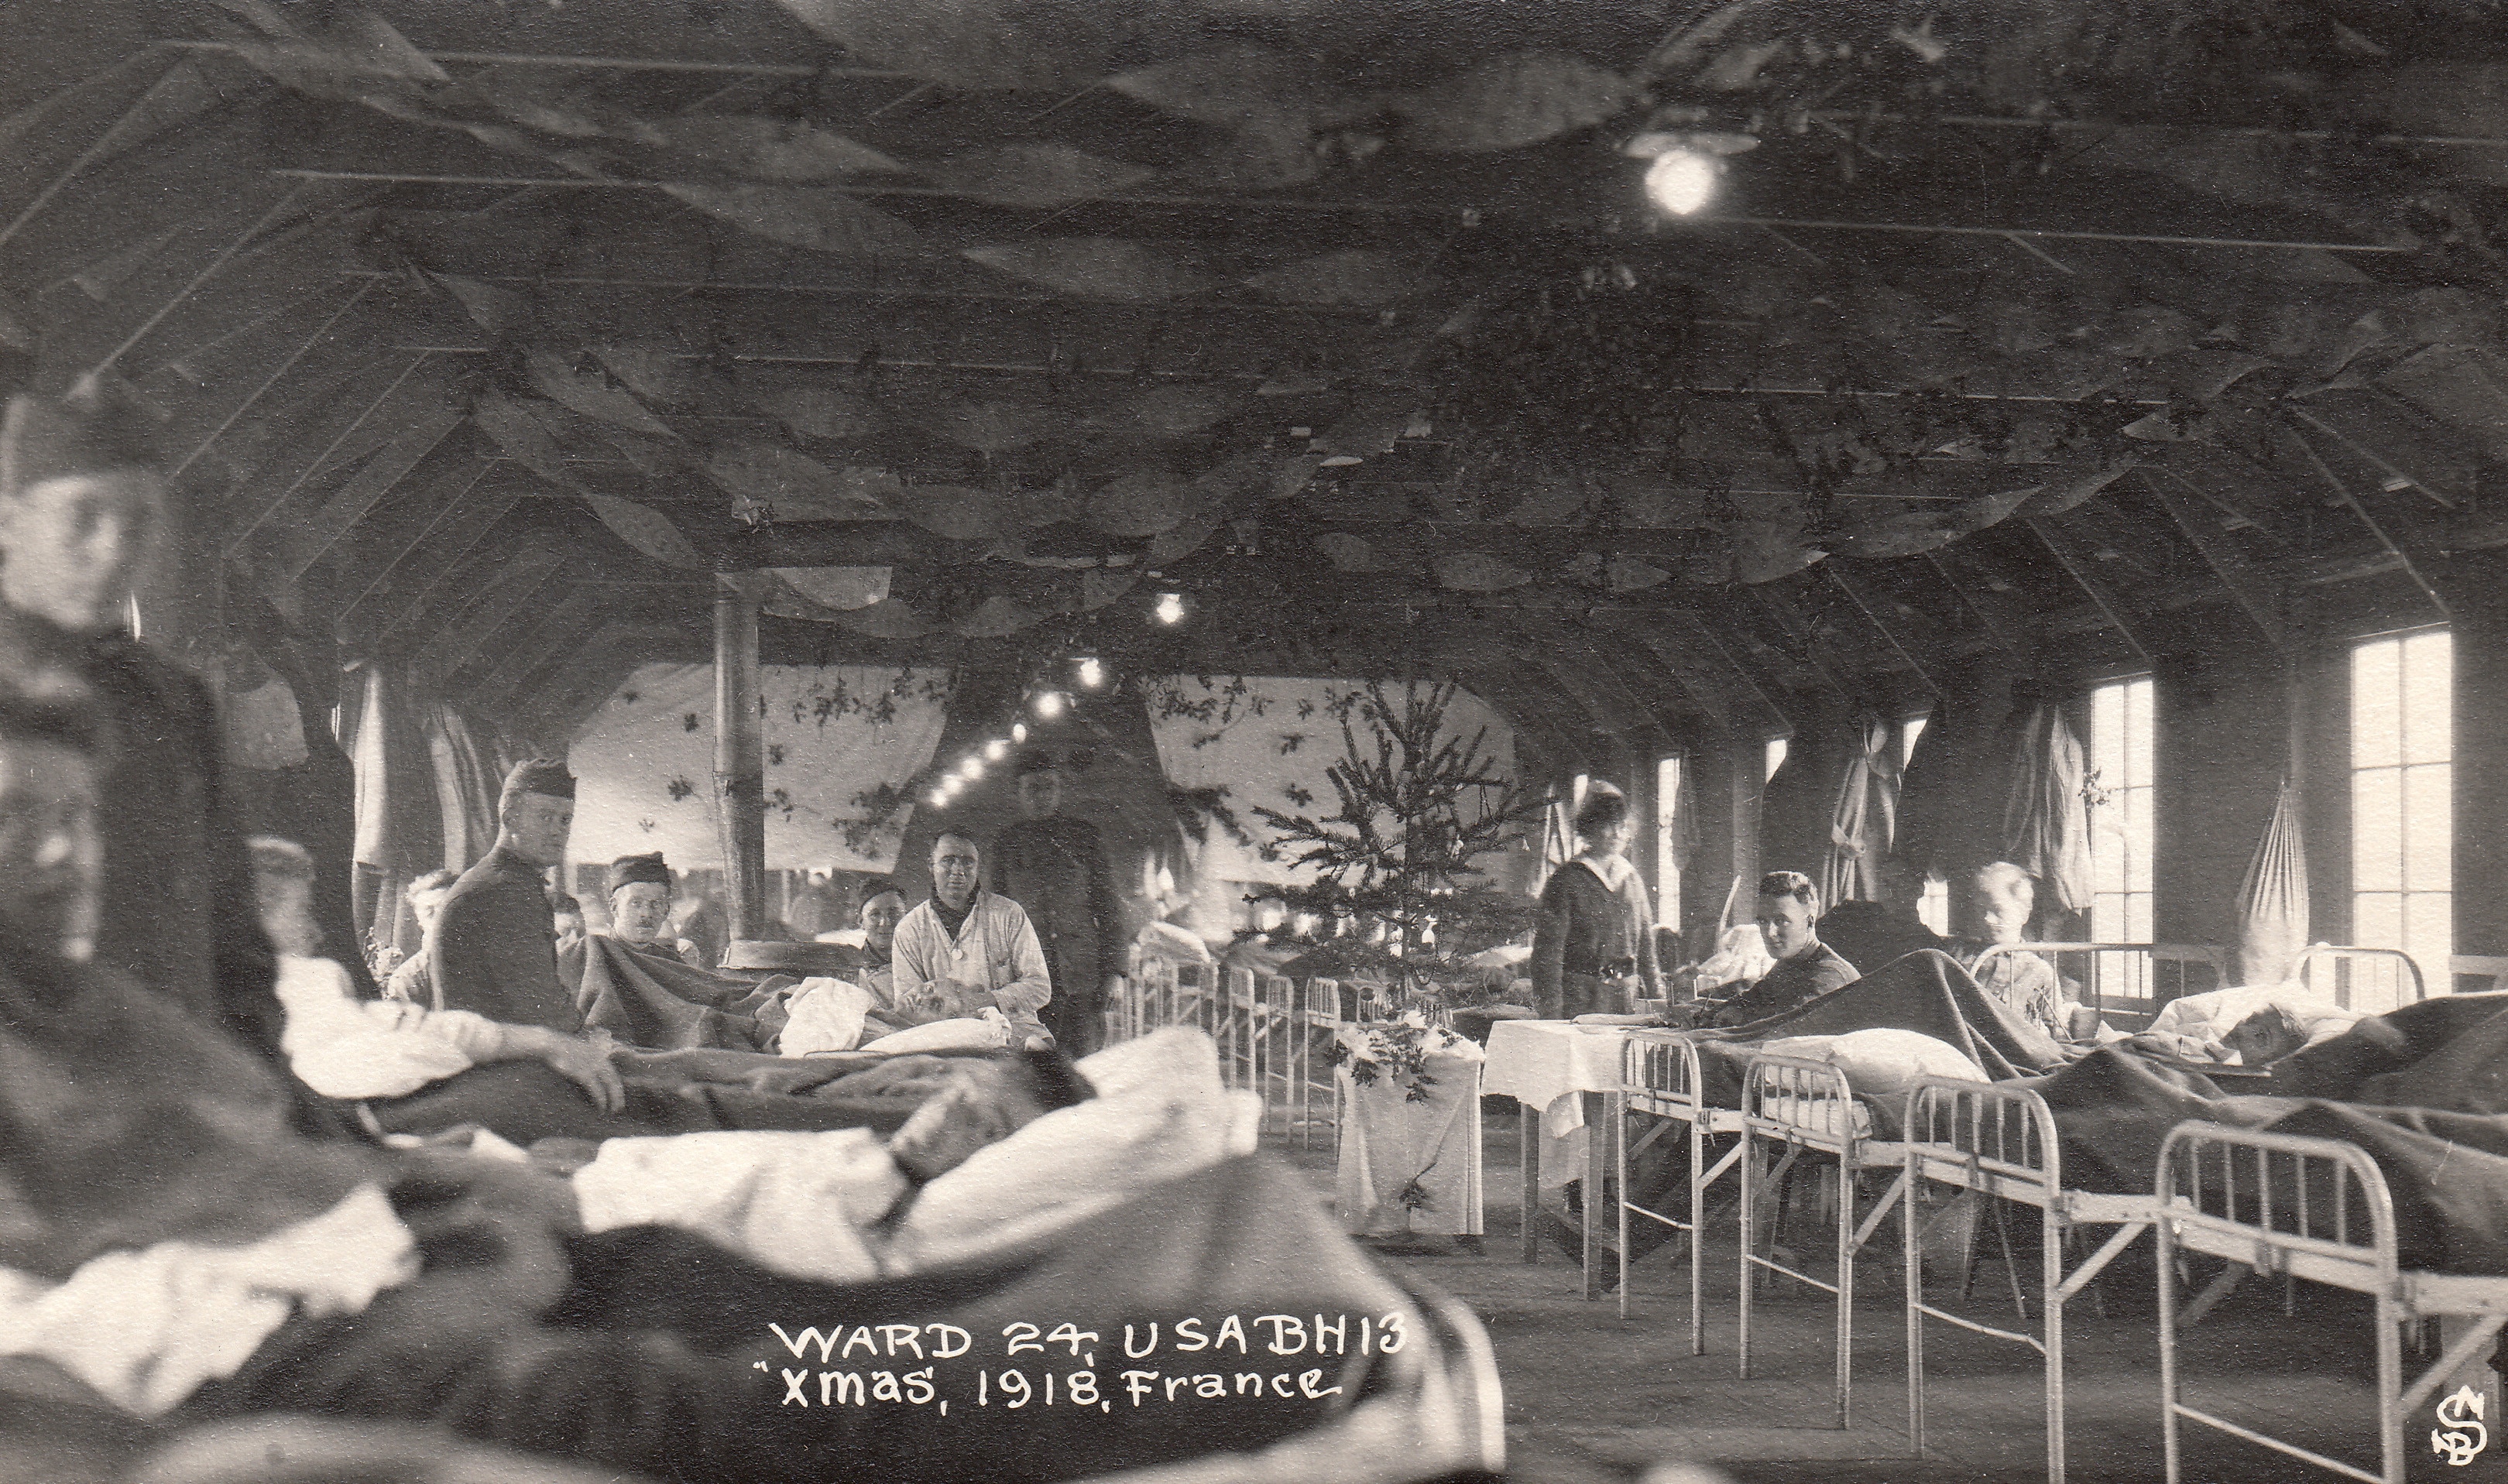 Festa di Natale in una caserma che ospita feriti, in Francia nel 1918